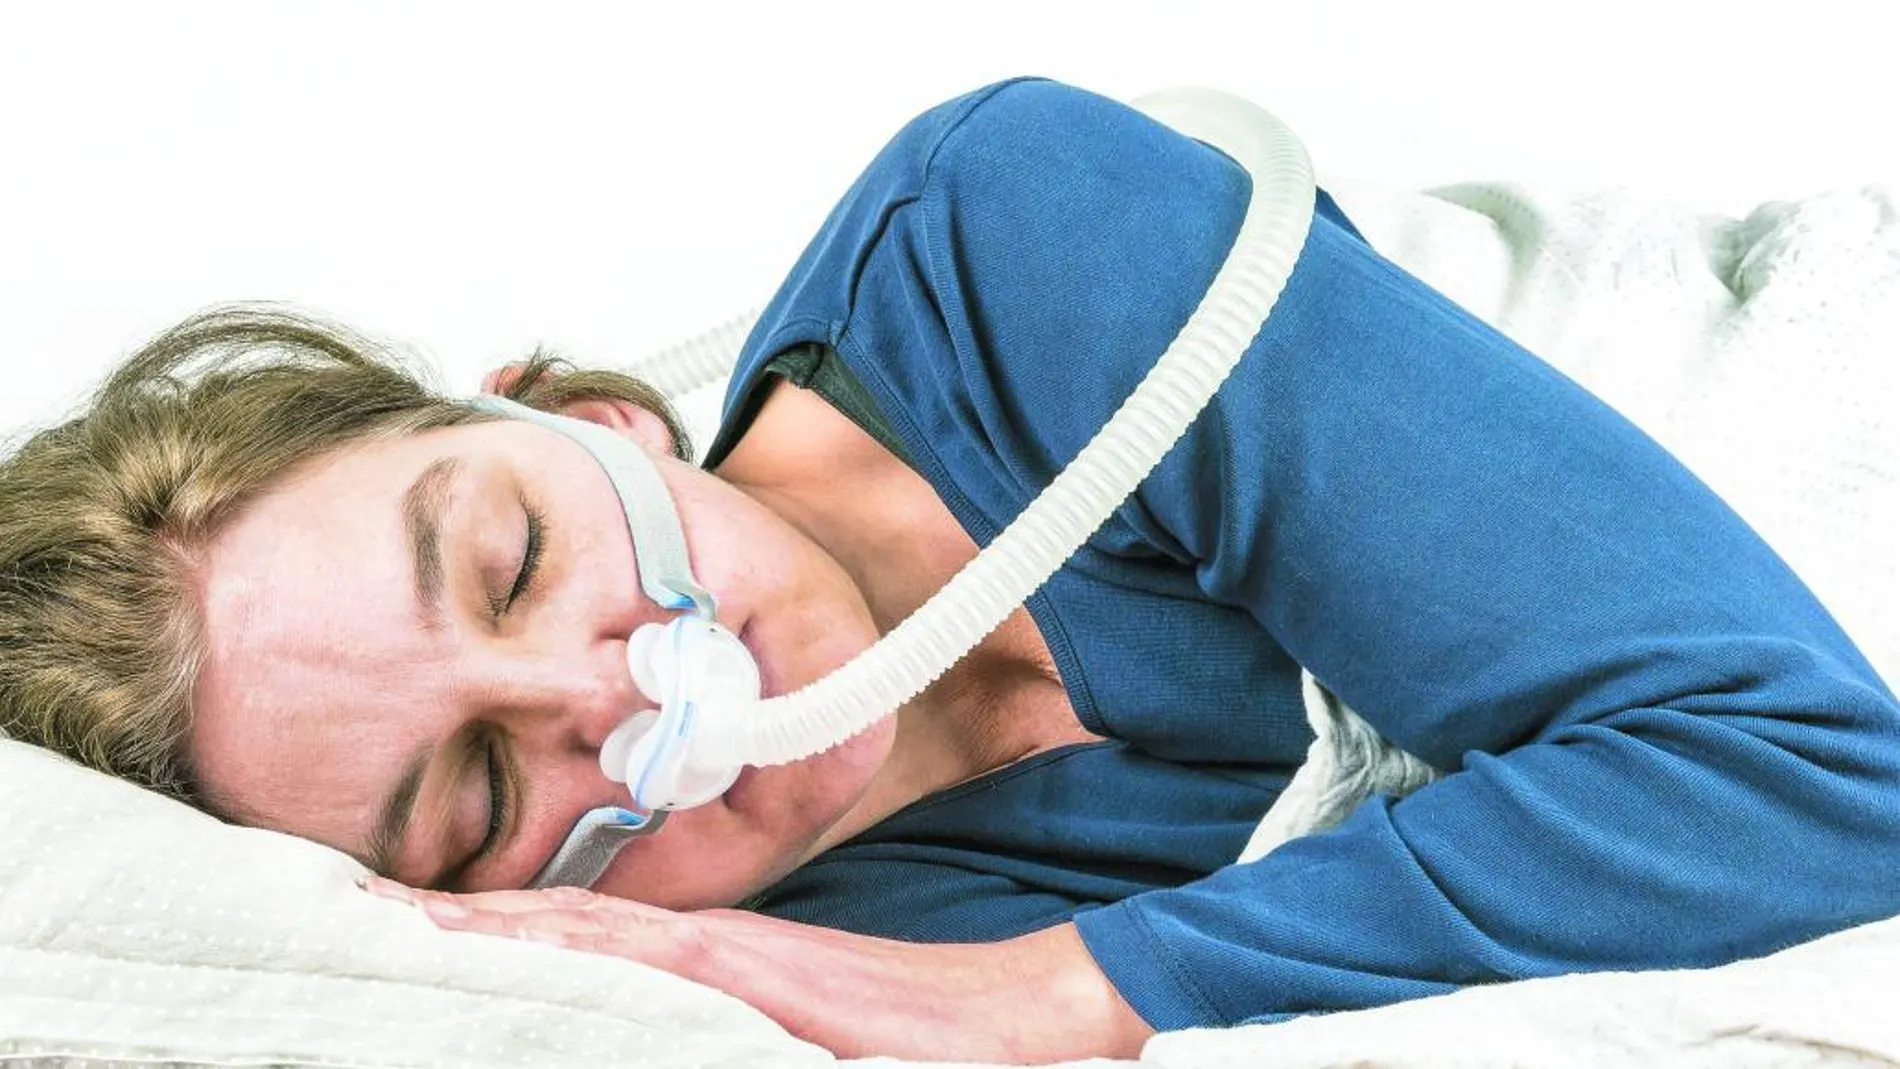 La esperanza para las personas que sufren apnea del sueño: un dispositivo  del Hospital Clínico de Madrid podría curarla